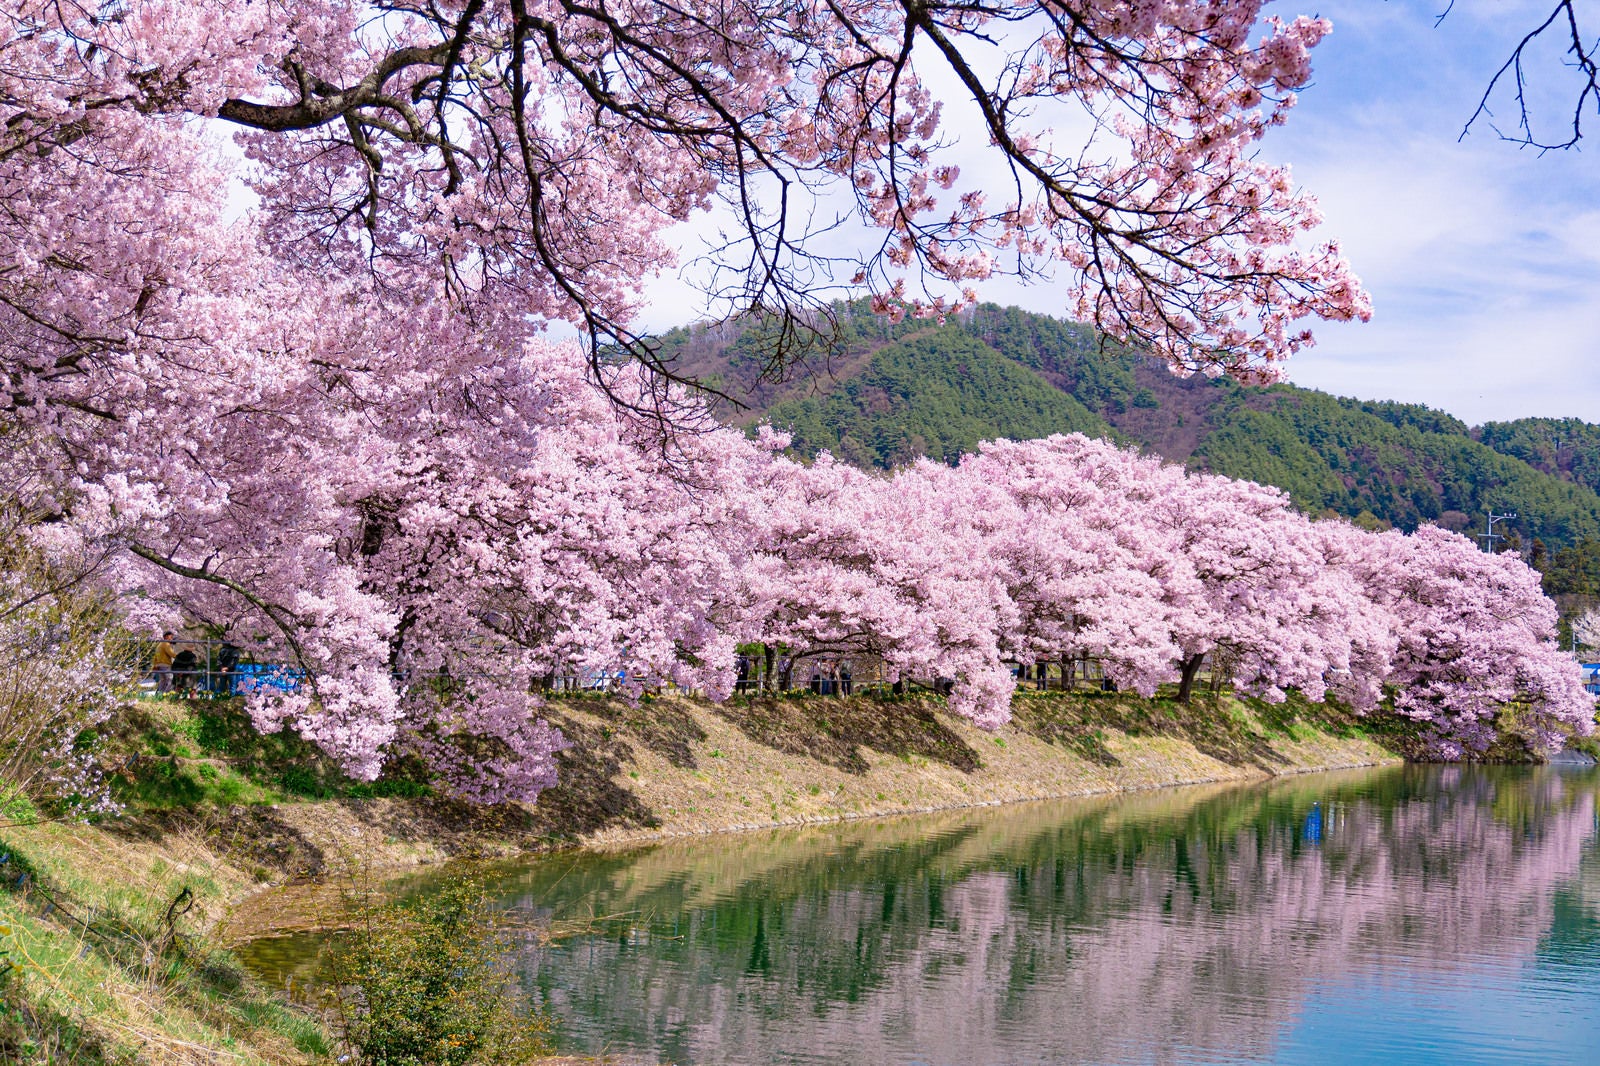 「池の畔を優しいピンクで埋め尽くす六道堤のタカトオコヒガンザクラ」の写真